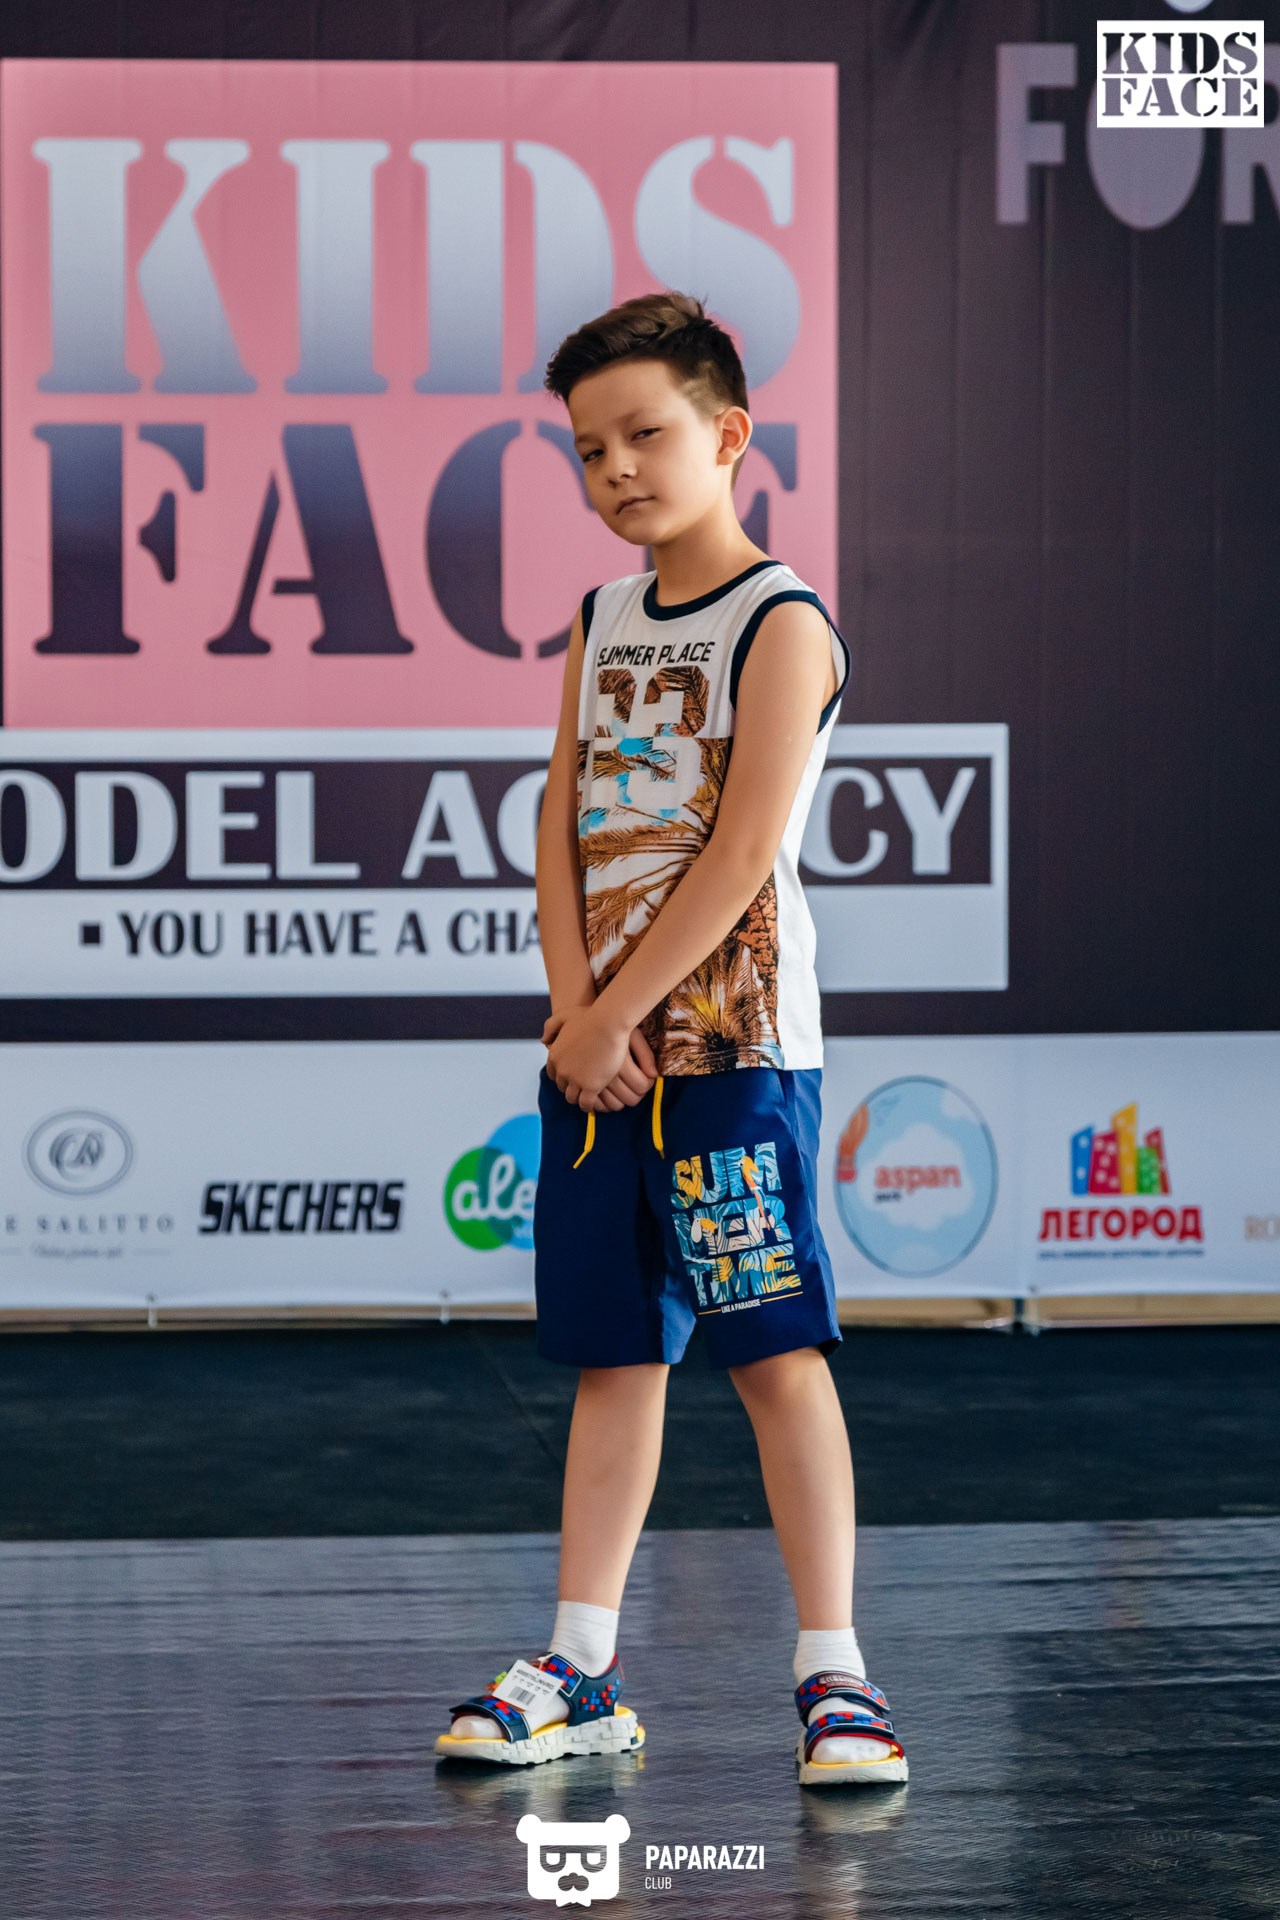 Детский показ летней коллекции от модельного агенства KIDS FACE